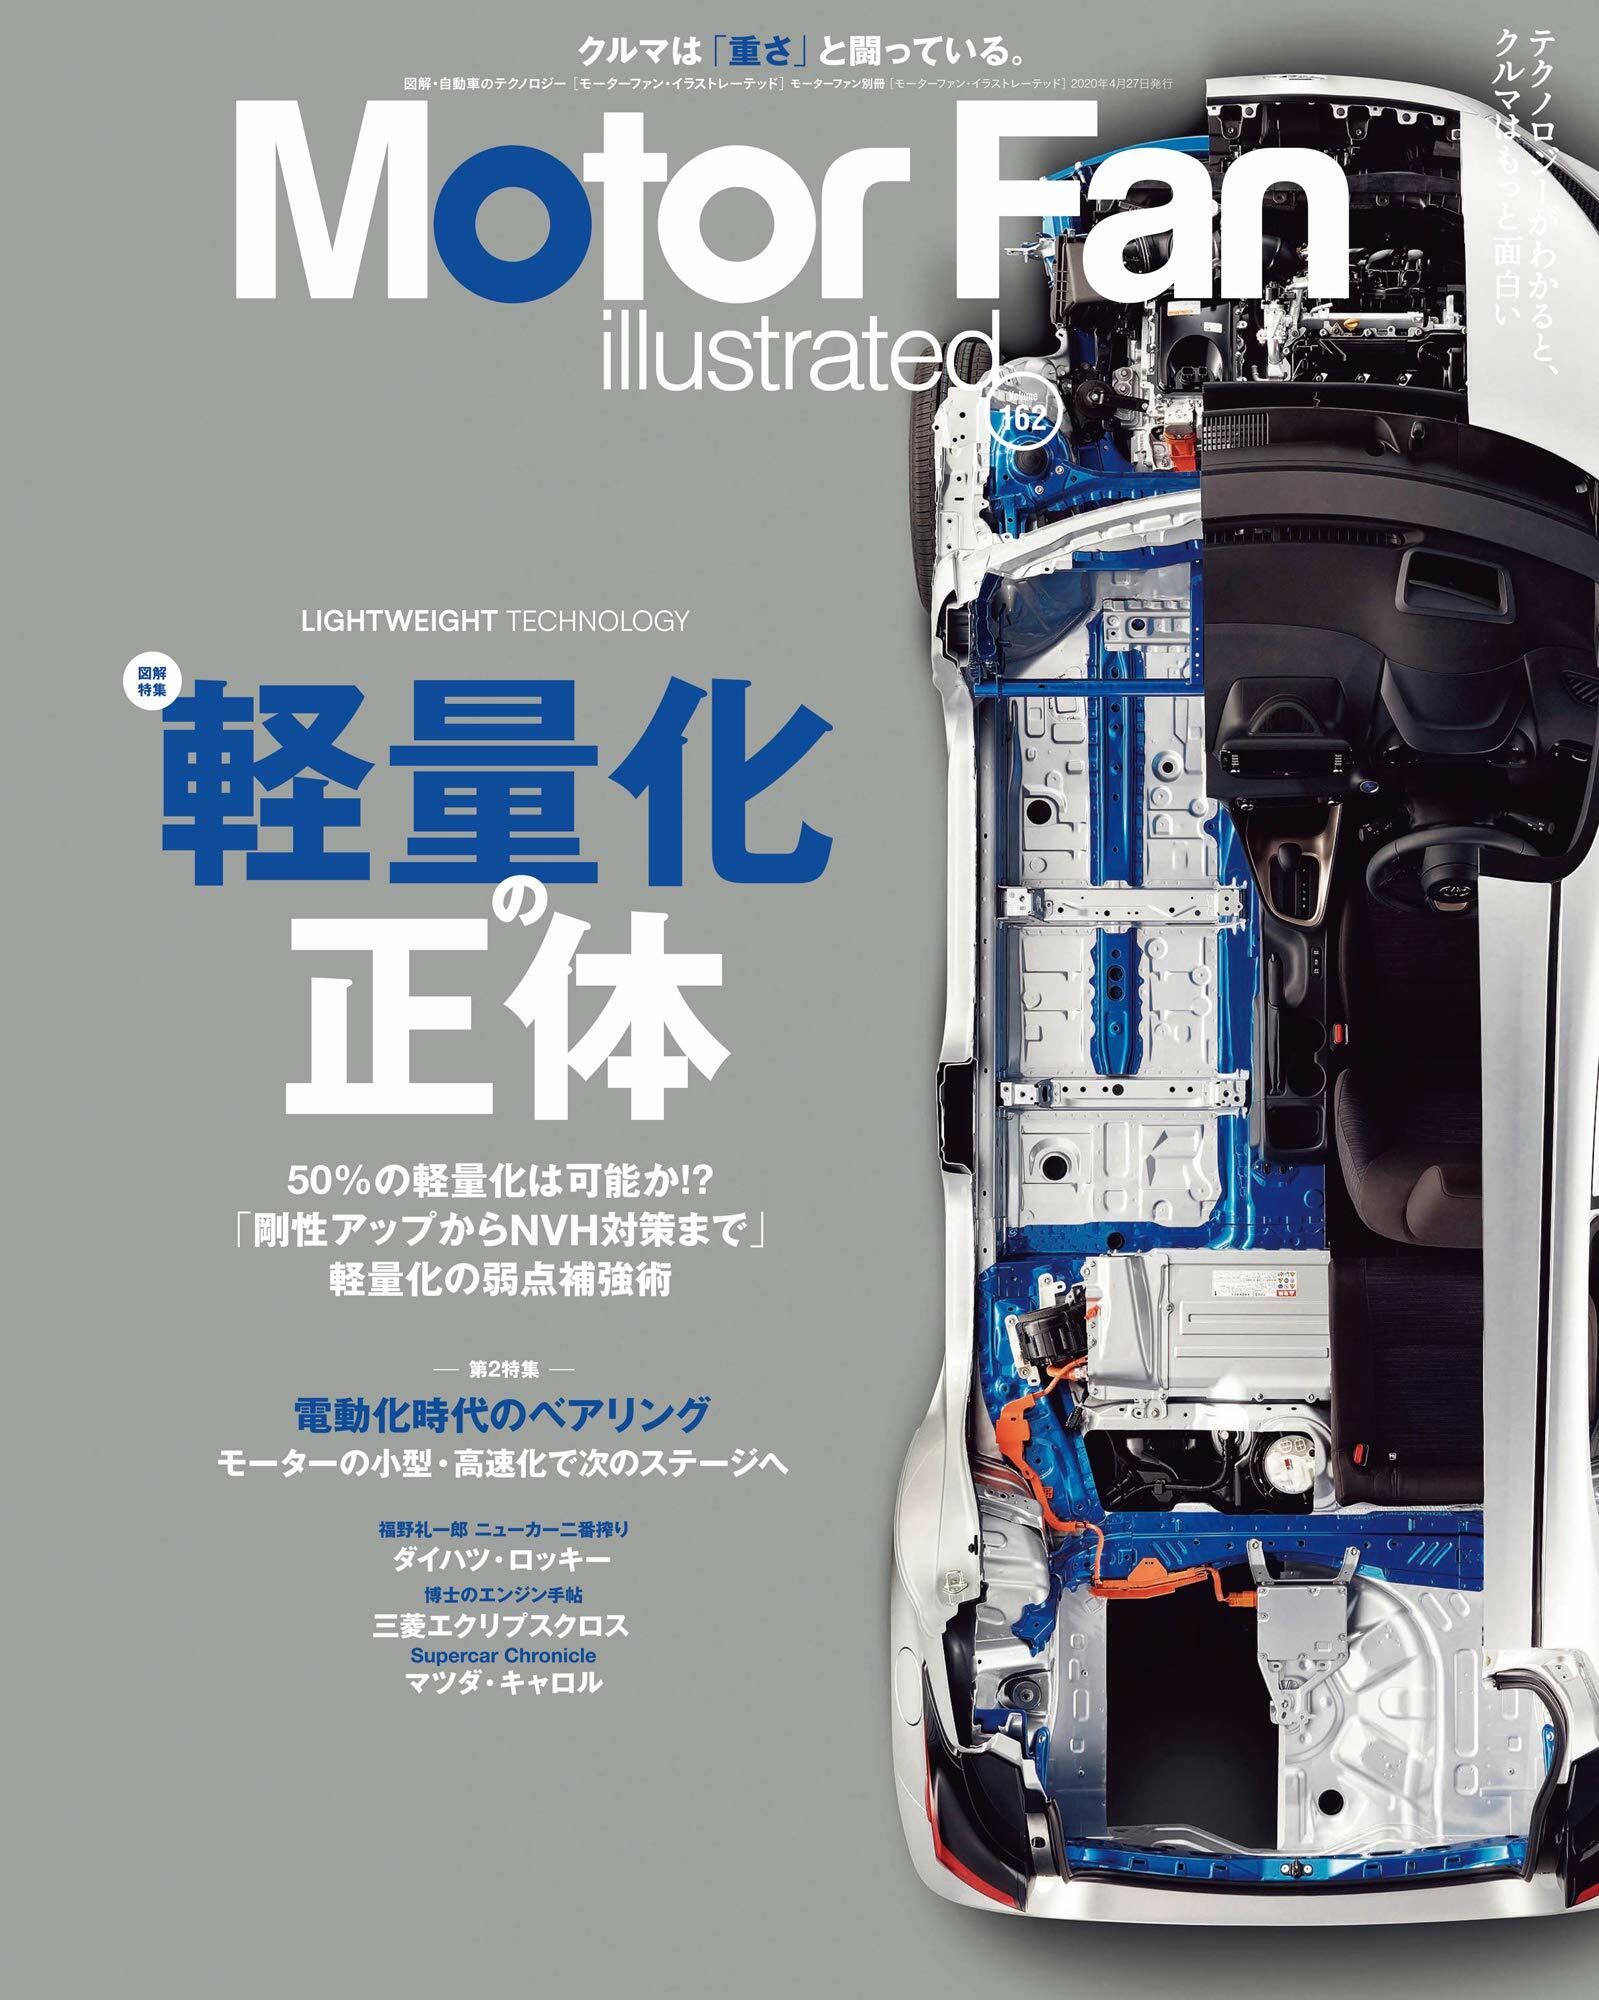 MOTOR FAN illustrated - モ-タ-ファンイラストレ-テッド - Vol.162